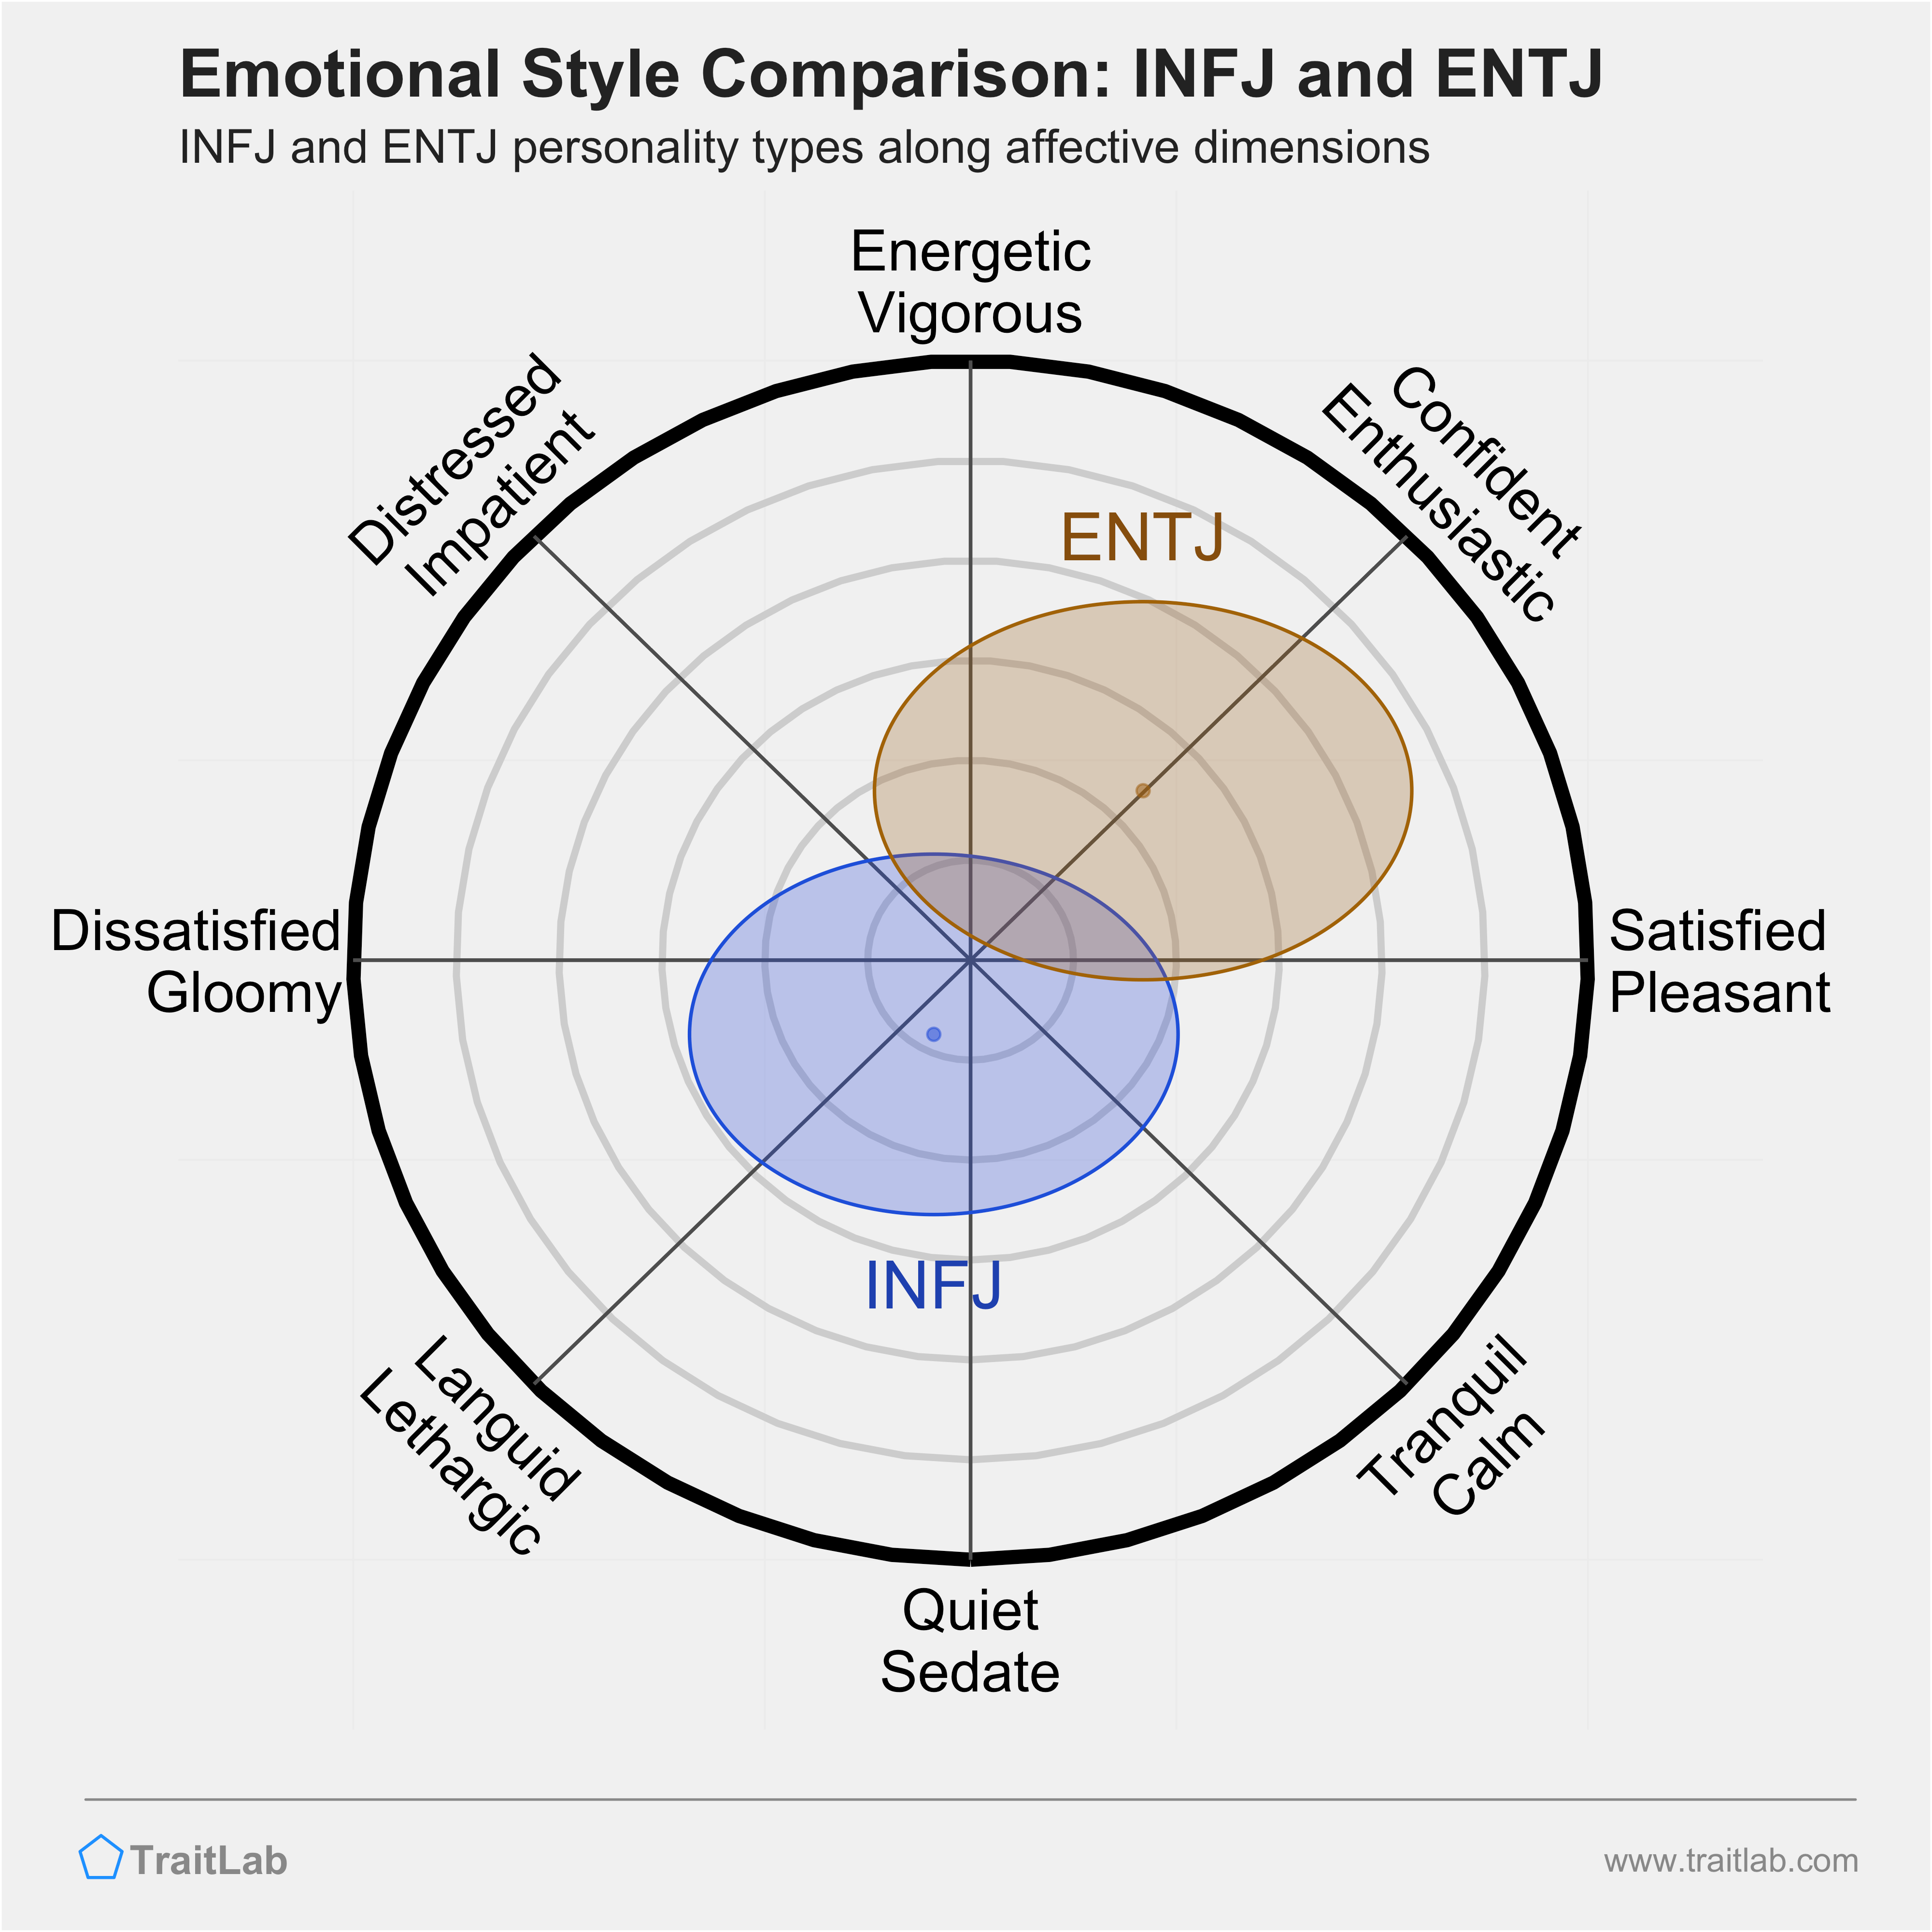 INFJ and ENTJ comparison across emotional (affective) dimensions